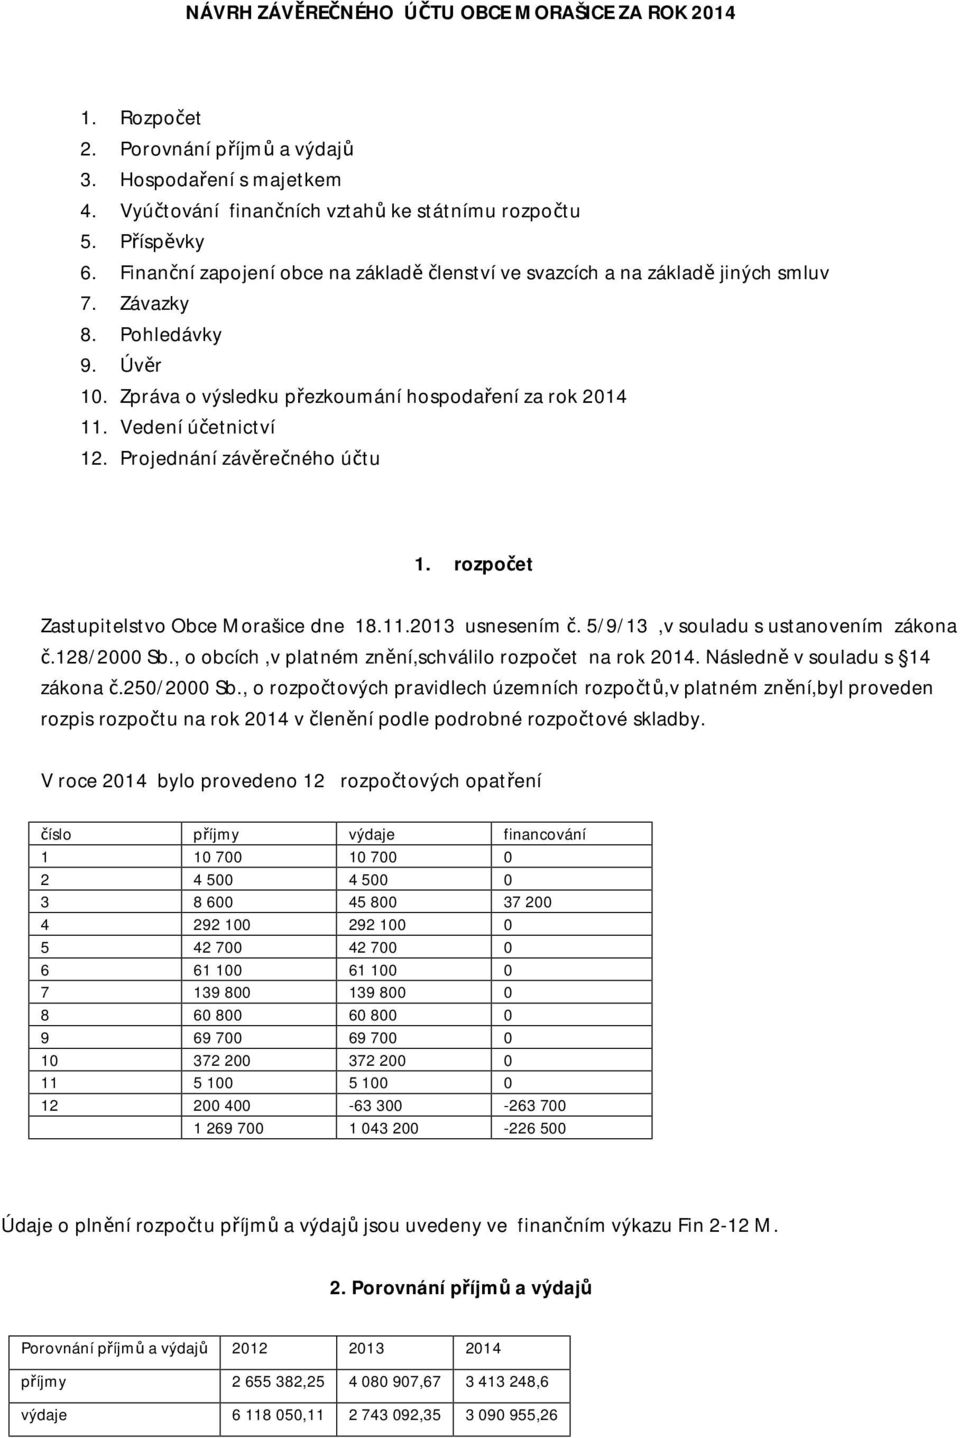 Projednání závěrečného účtu 1. rozpočet Zastupitelstvo Obce Morašice dne 18.11.2013 usnesením č. 5/9/13,v souladu s ustanovením zákona č.128/2000 Sb.